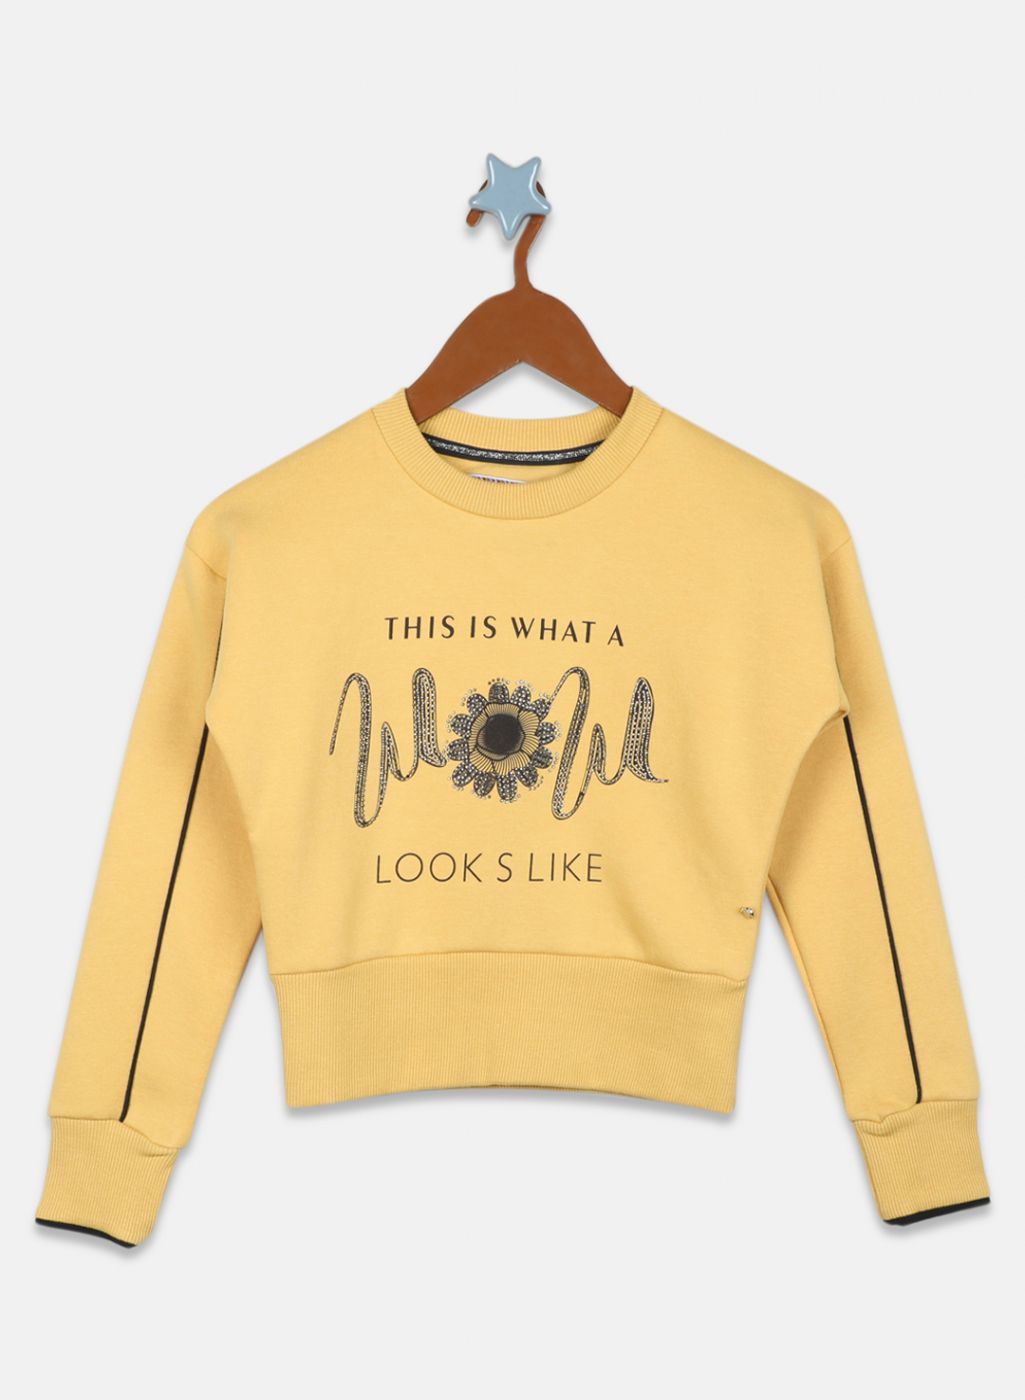 Girls Yellow Printed Sweatshirt